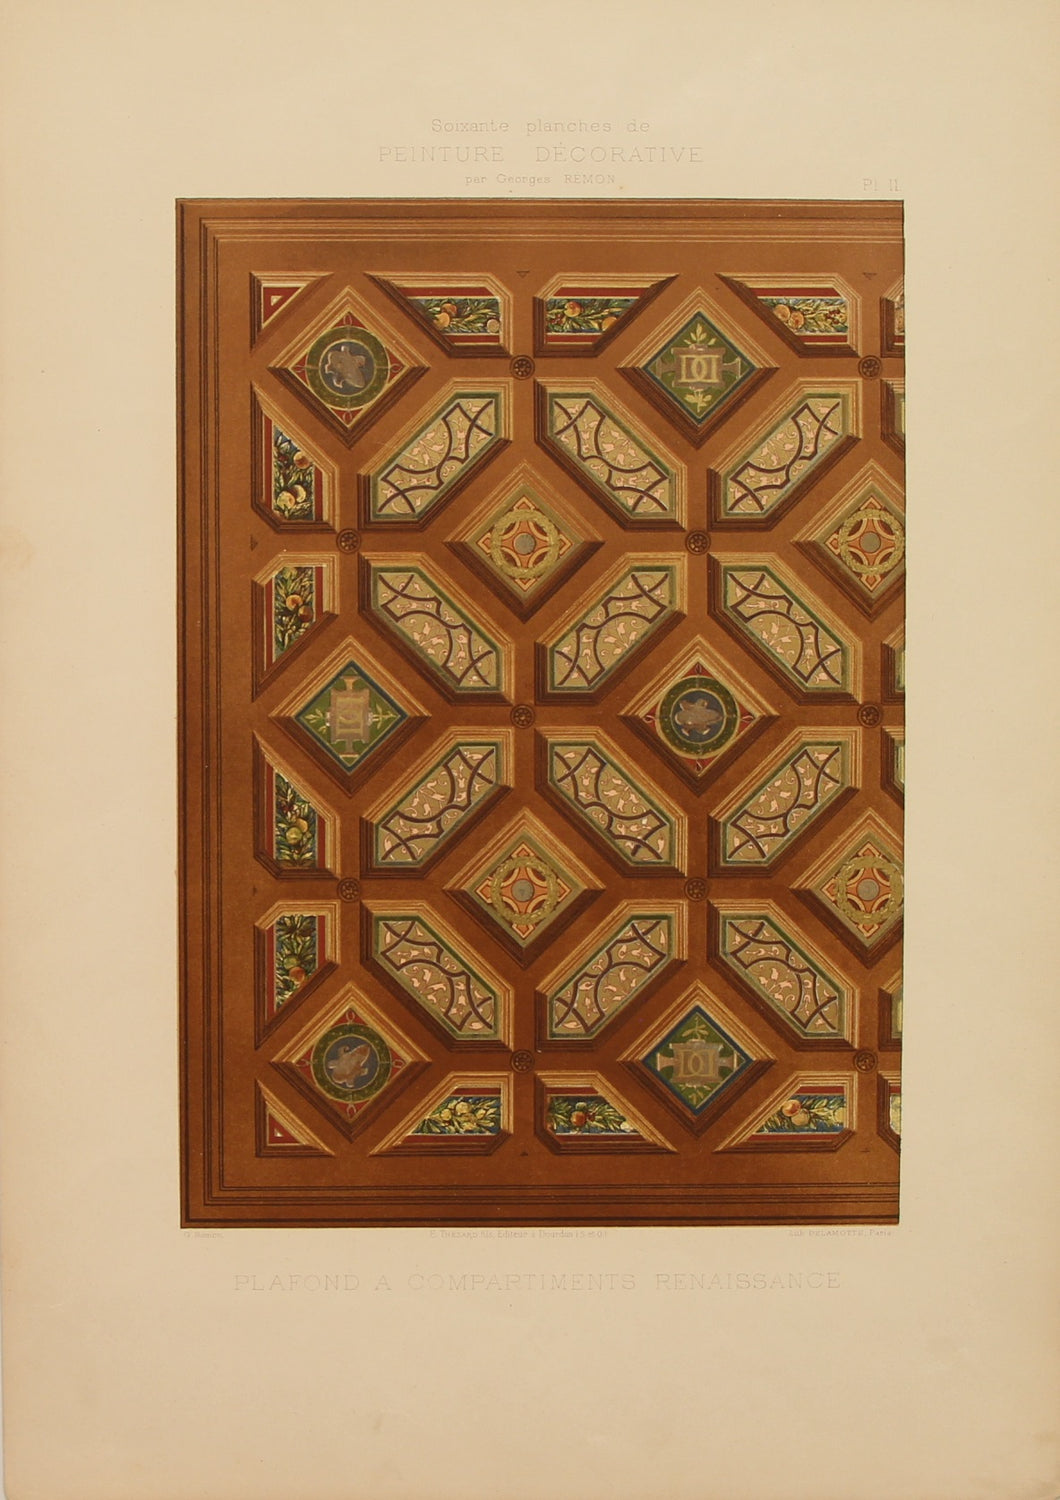 Decorator, Art Nouveau, Renaissance Compartment Ceiling Design, Plate 11, Georges Remon, c1890